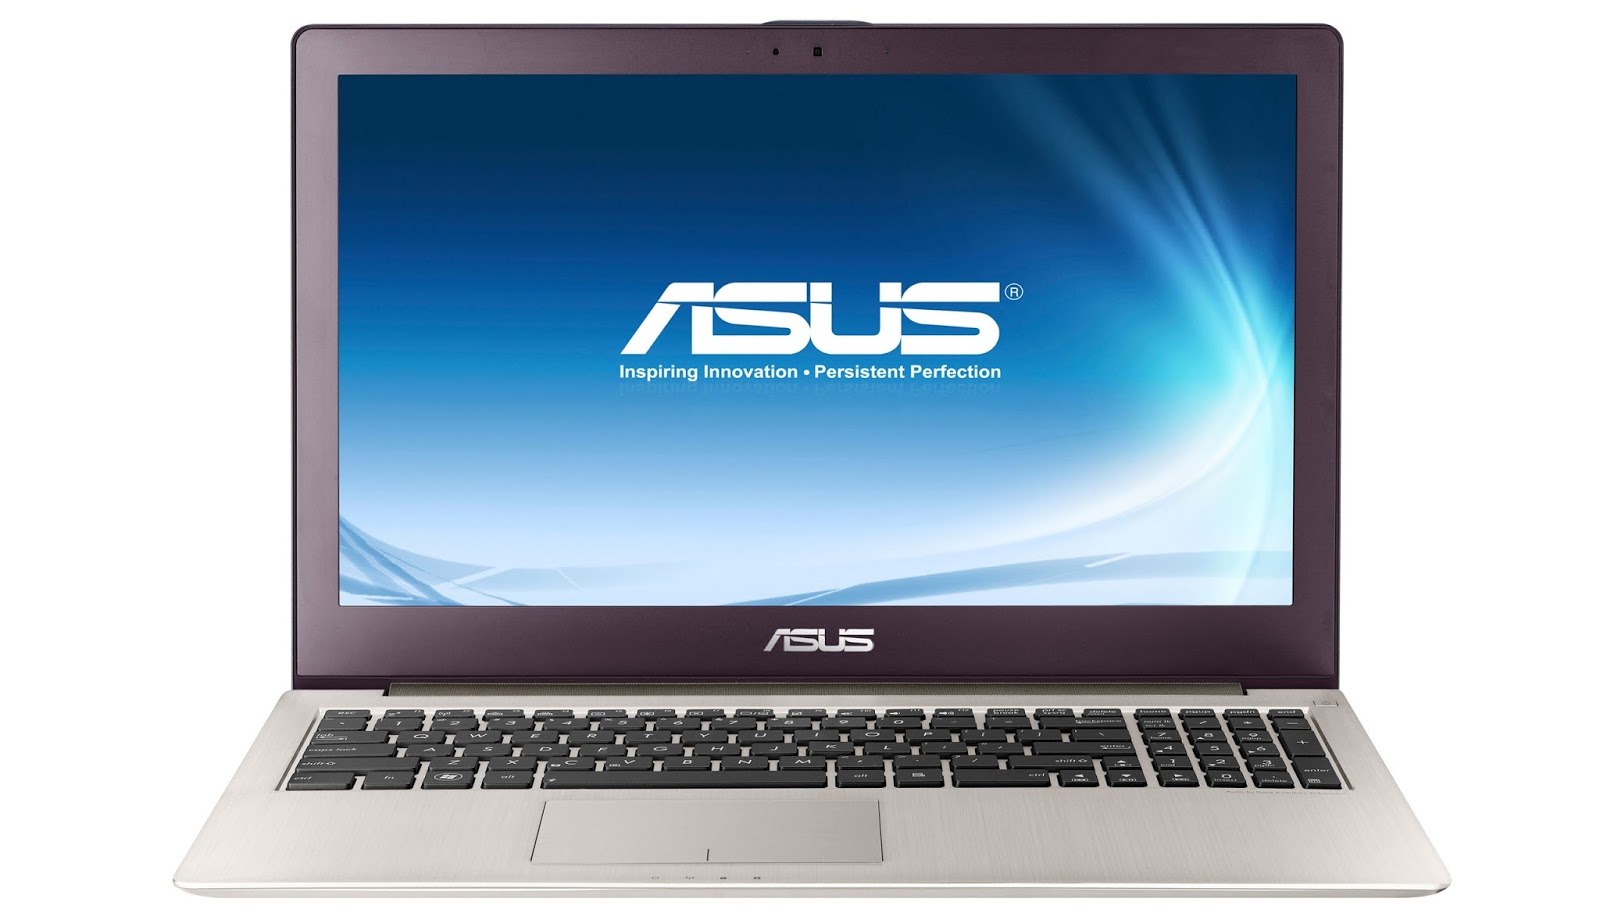 Spesifikasi dan Harga Laptop Asus Terbaru - InfoAkurat.com